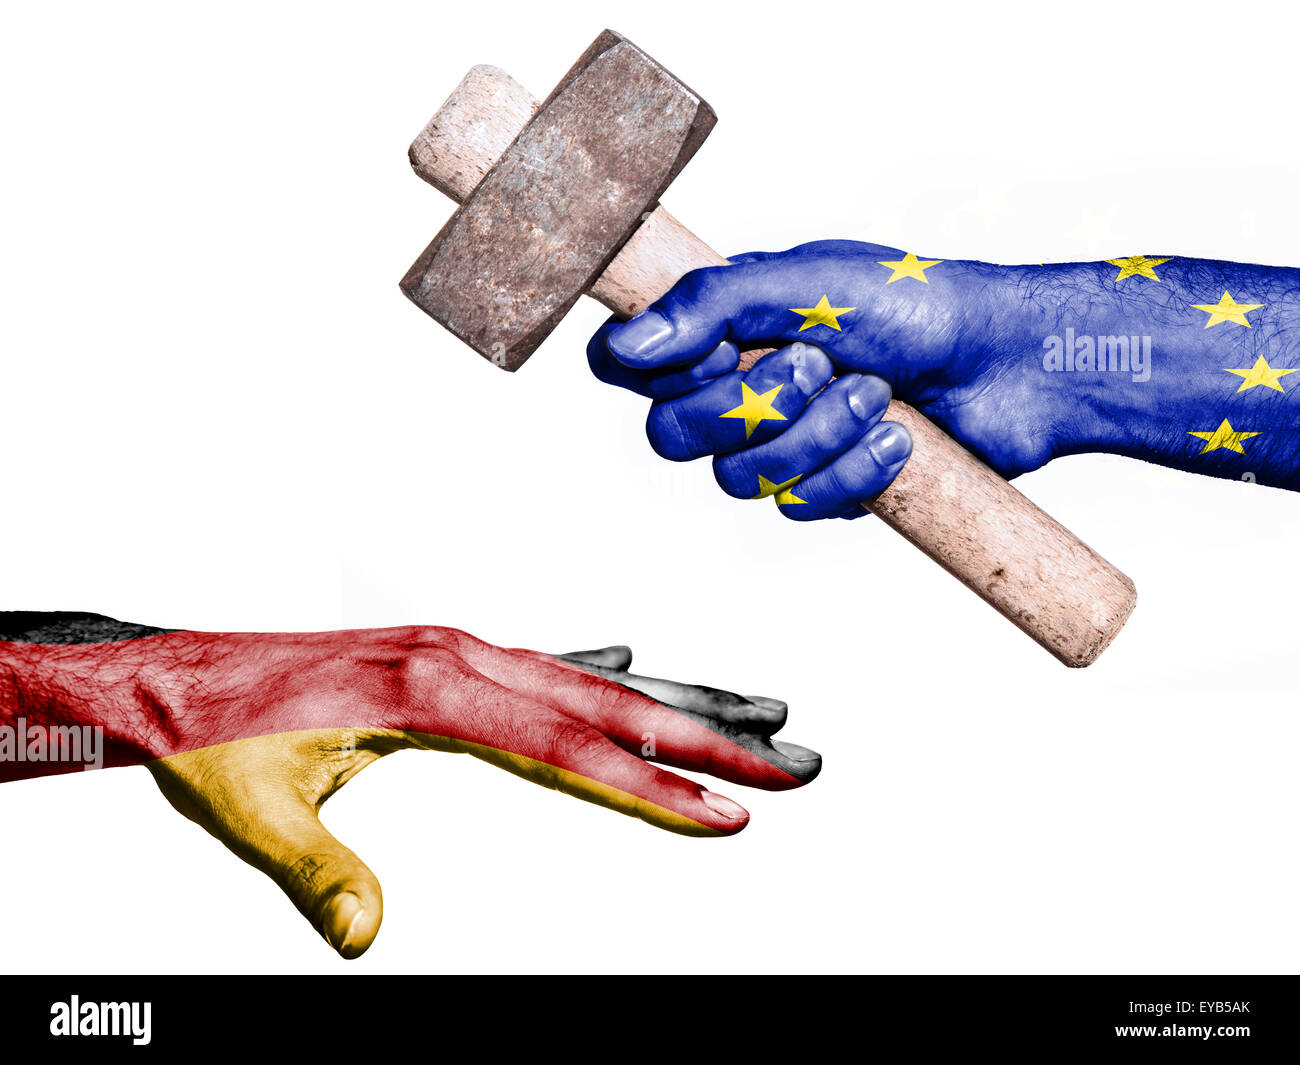 Bandiera dell'Unione europea sovrastampato su una mano che tiene un martello pesante di colpire una mano che rappresenta la Germania. Immagine concettuale fo Foto Stock